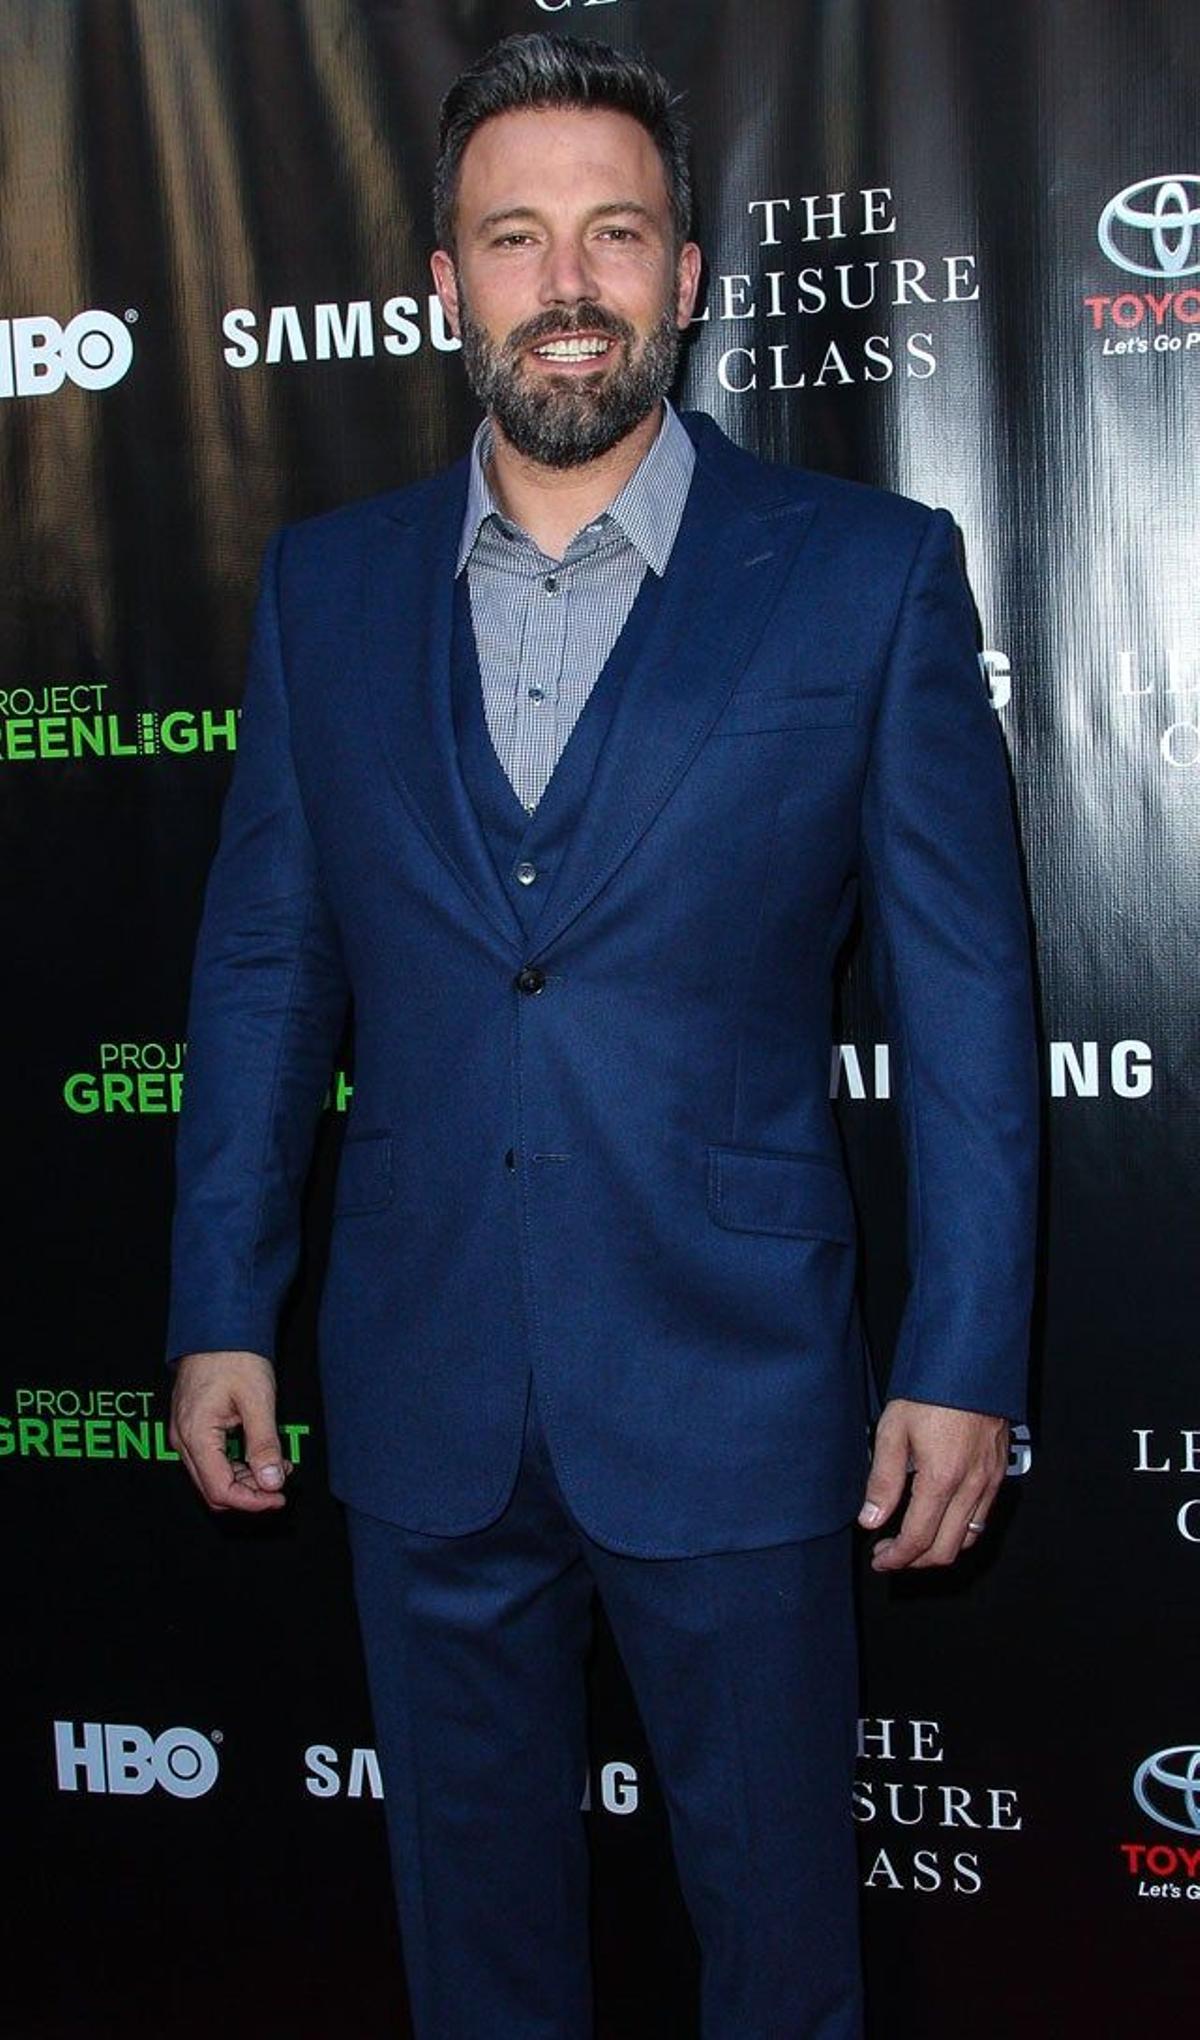 Ben Affleck en el estreno de 'The leisure class' en Los Ángeles